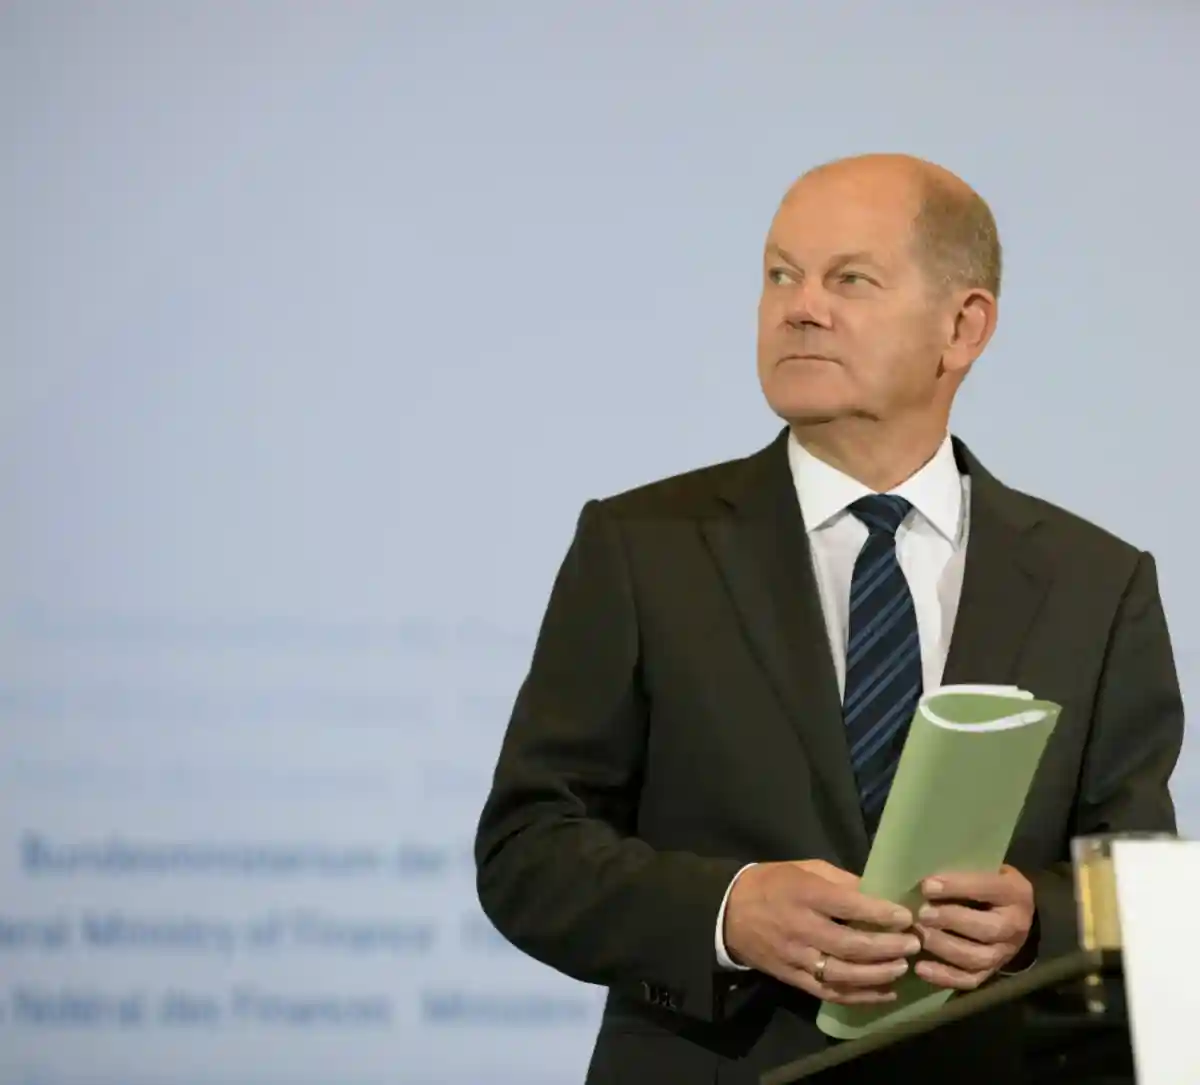 Шольц - новый канцлер Германии. Фото: photocosmos1 / shutterstock.com